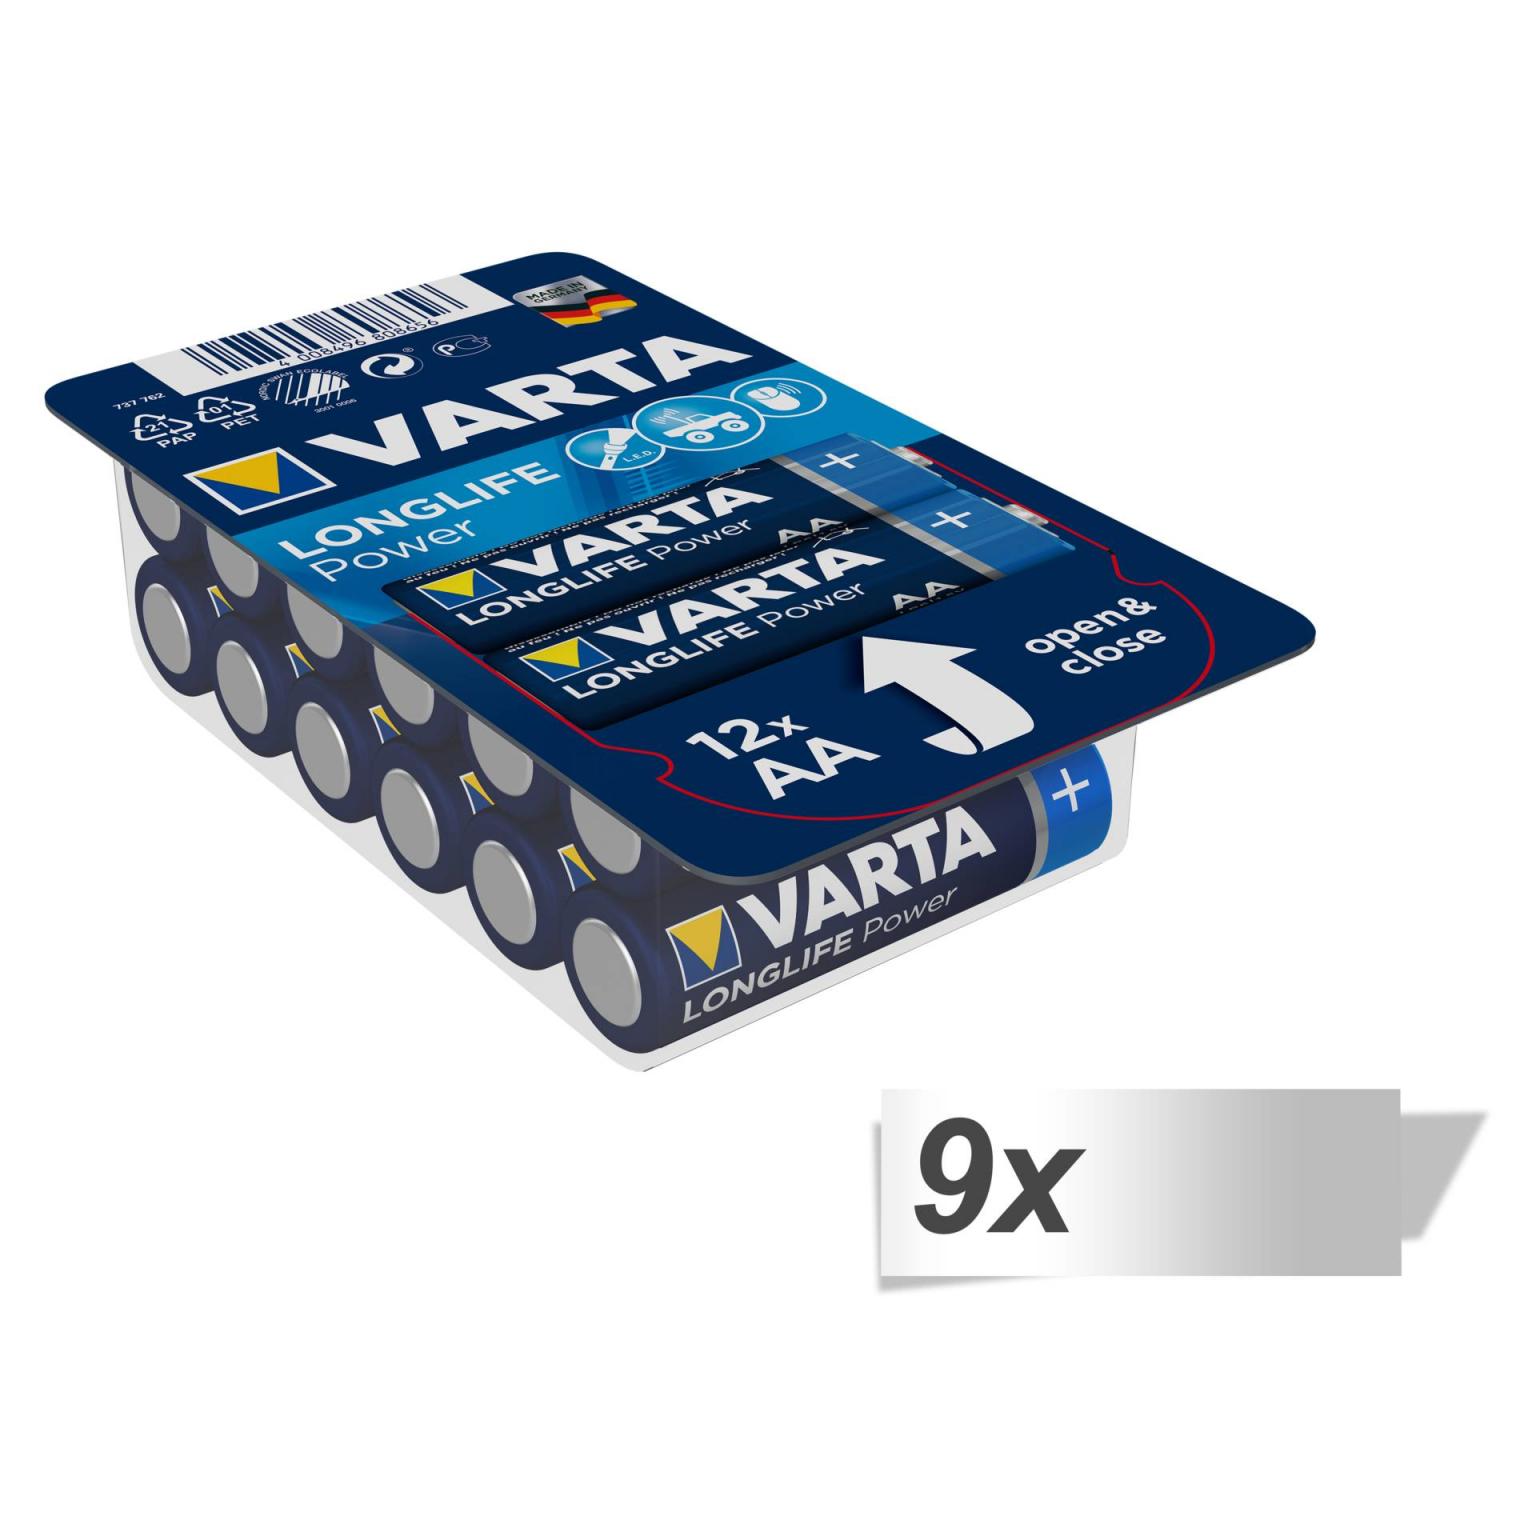 9x12 Varta Longlife Power AA LR 6 Ready-To-Sell Tray Big Box - 0490630112 - Varta